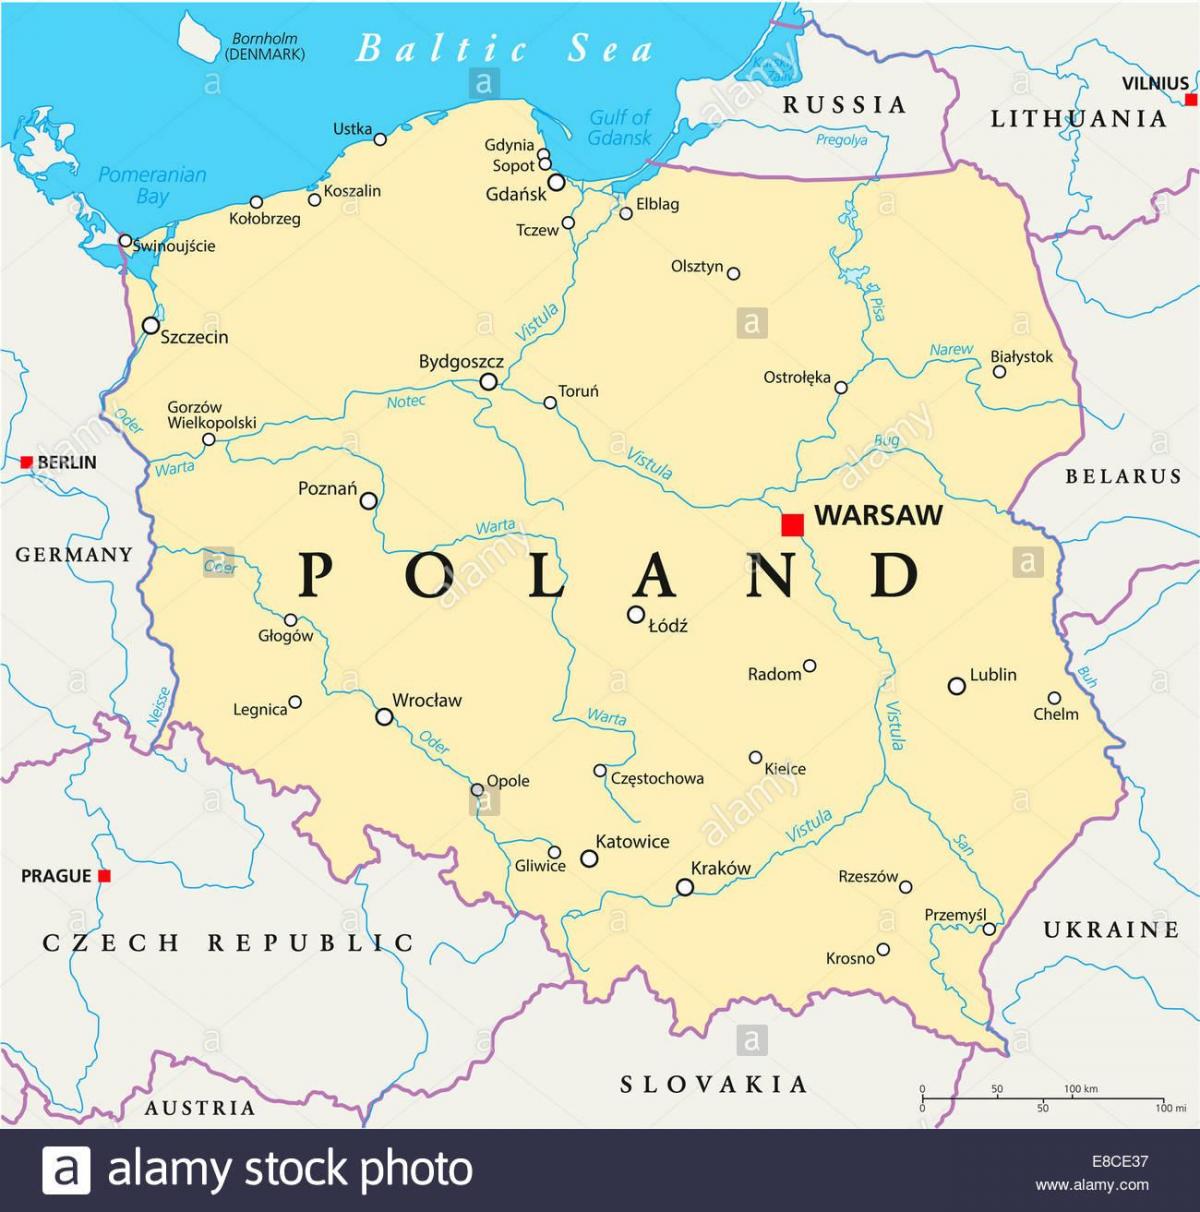 Dünya haritası üzerinde Varşova konumu 